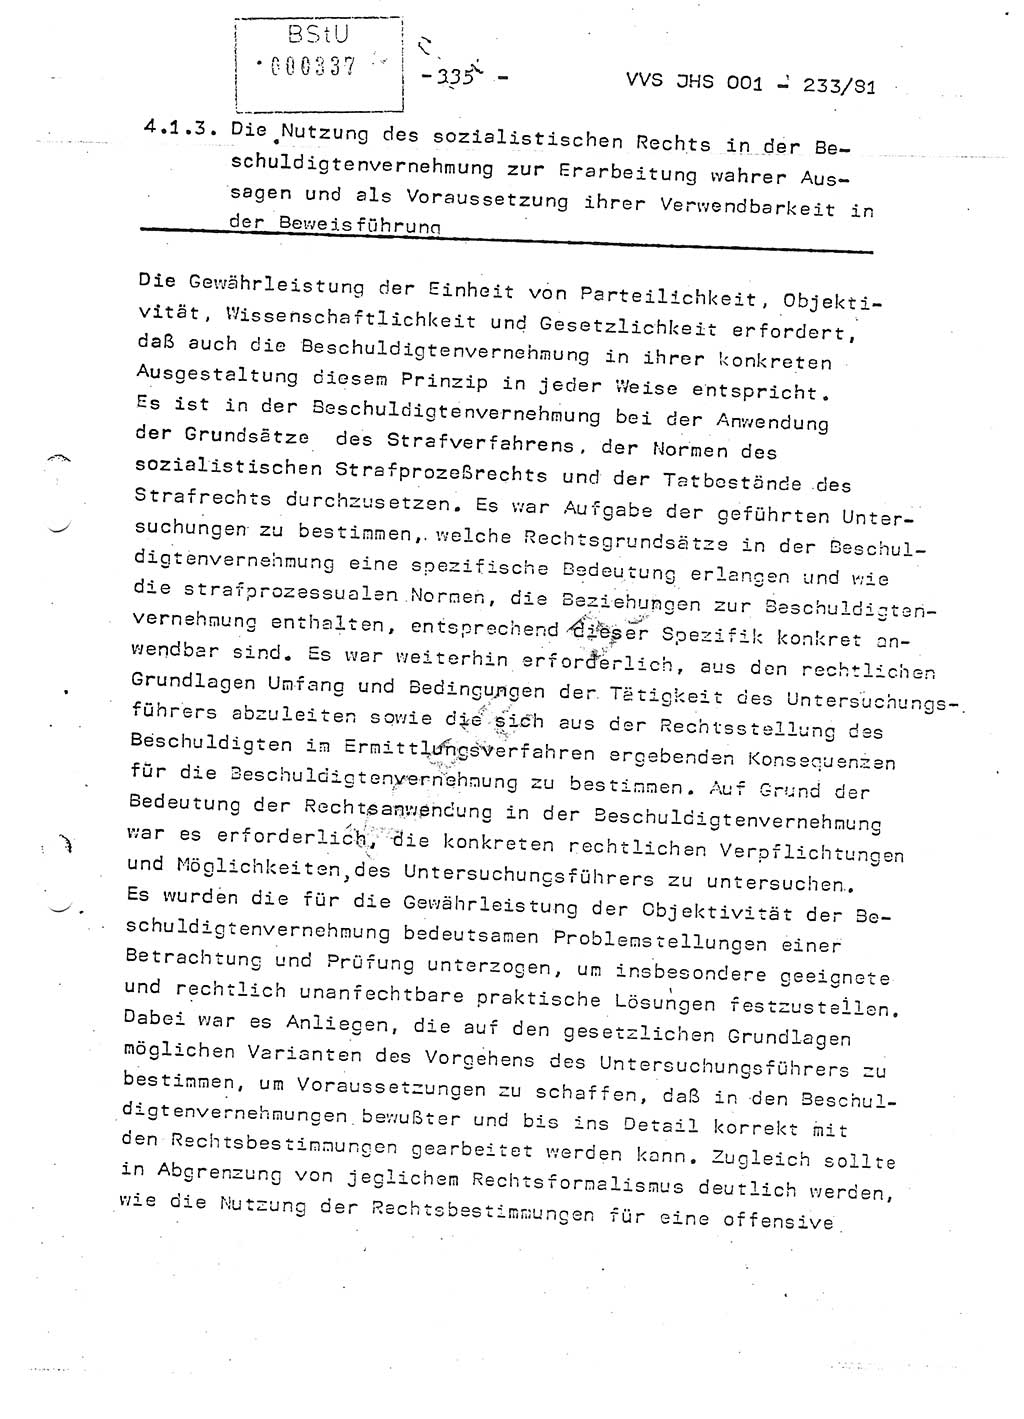 Dissertation Oberstleutnant Horst Zank (JHS), Oberstleutnant Dr. Karl-Heinz Knoblauch (JHS), Oberstleutnant Gustav-Adolf Kowalewski (HA Ⅸ), Oberstleutnant Wolfgang Plötner (HA Ⅸ), Ministerium für Staatssicherheit (MfS) [Deutsche Demokratische Republik (DDR)], Juristische Hochschule (JHS), Vertrauliche Verschlußsache (VVS) o001-233/81, Potsdam 1981, Blatt 335 (Diss. MfS DDR JHS VVS o001-233/81 1981, Bl. 335)